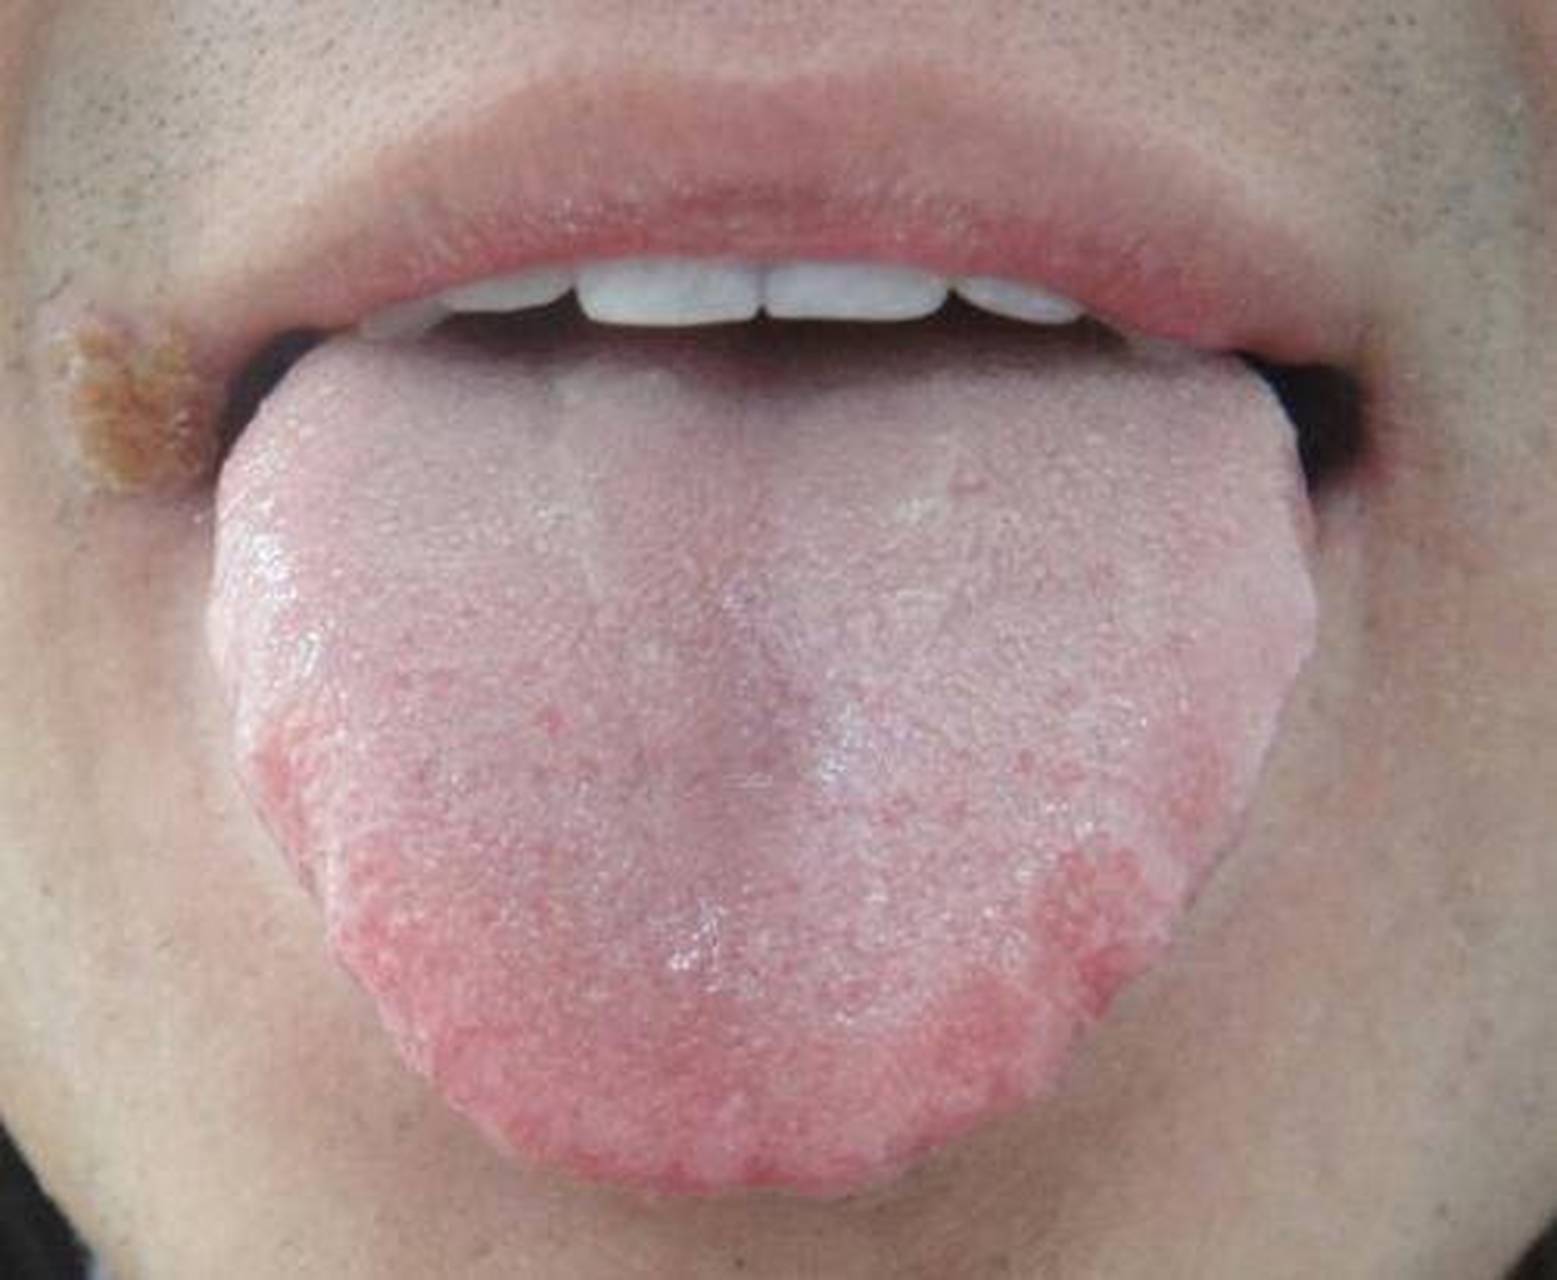 就是胖大舌,舌体较正常的舌体的更胖大,伸舌满口,你看它的舌头伸出来